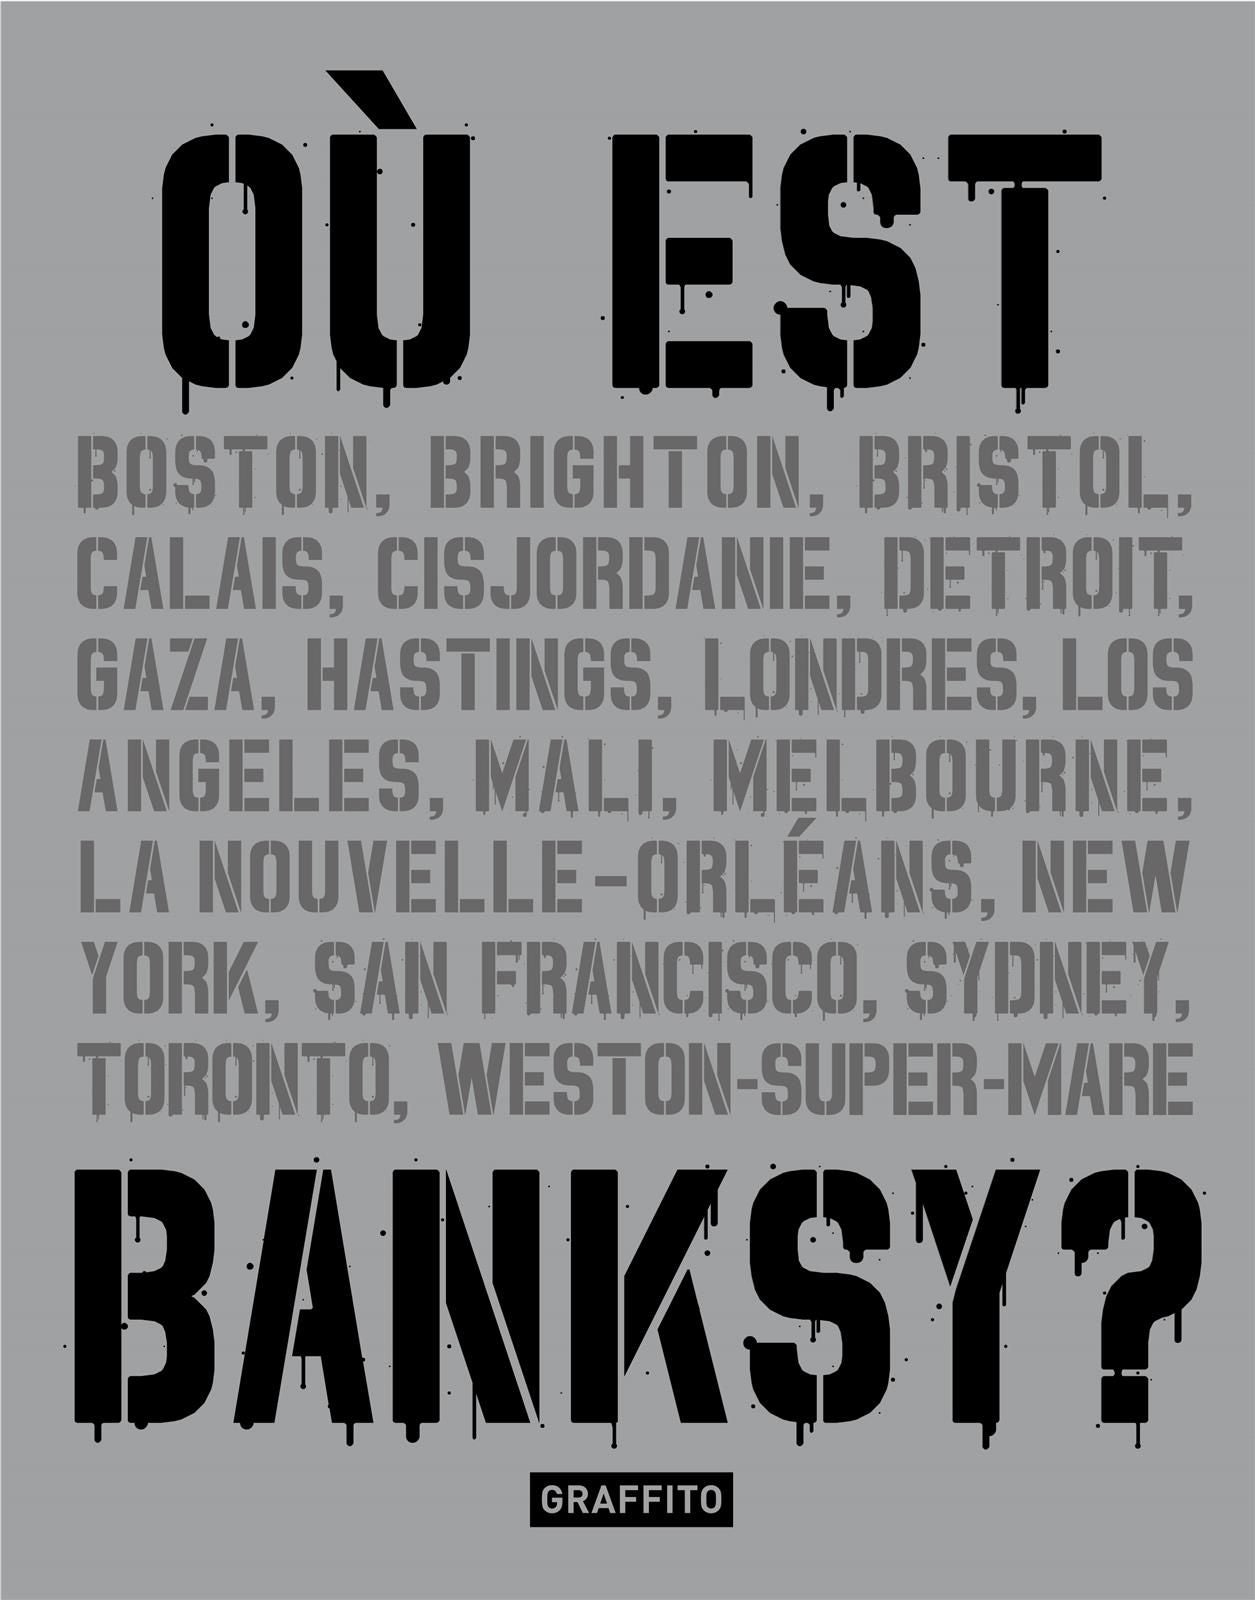 Où est Banksy ?